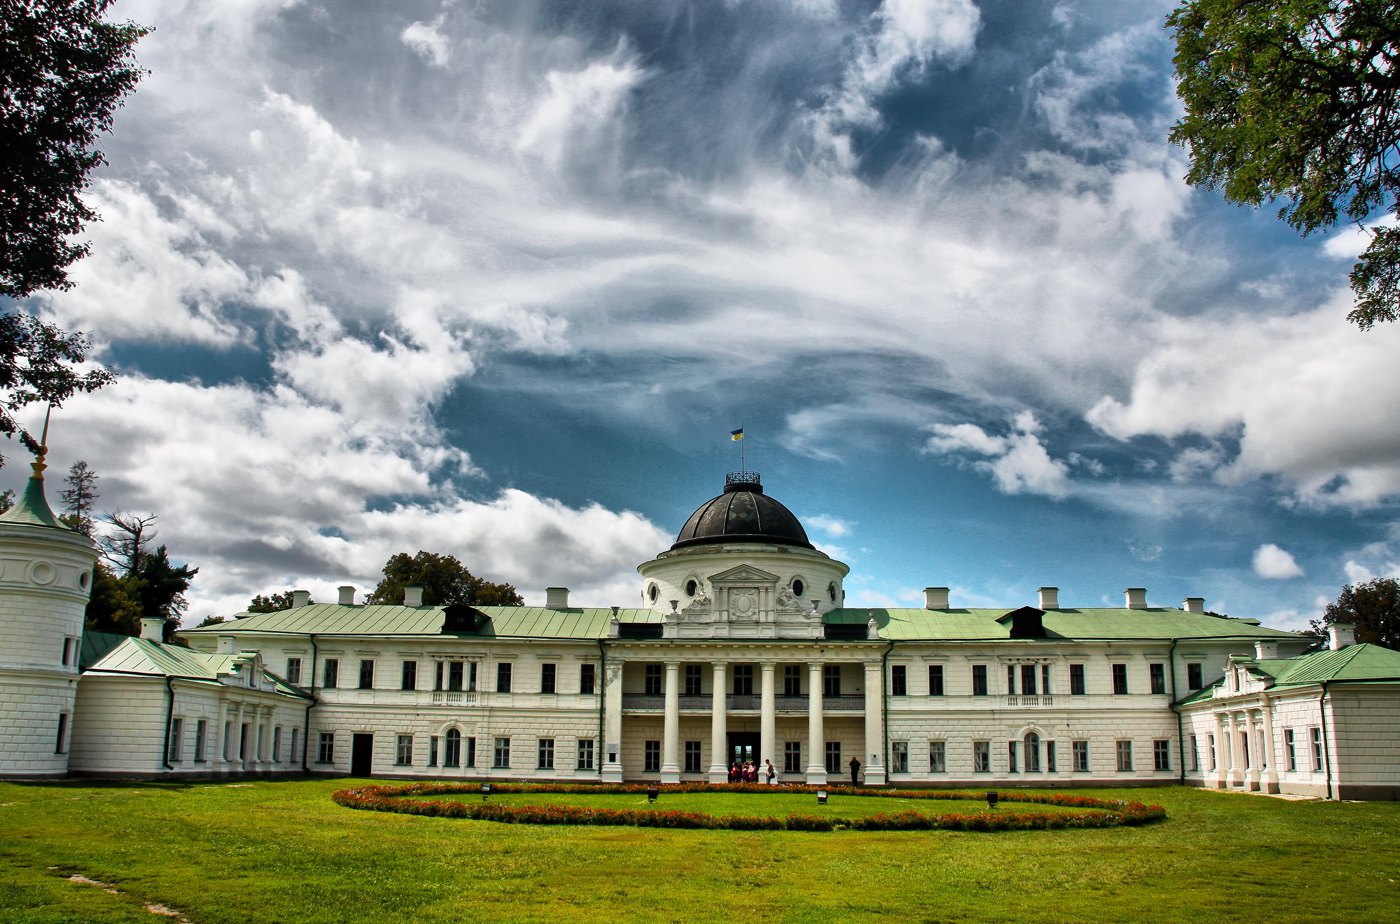 Палац руського козацького роду Тарнавських у Качанівці в Чернігівській області, який, зокрема, часто відвідували Шевченко, Ріпин і Гоголь.